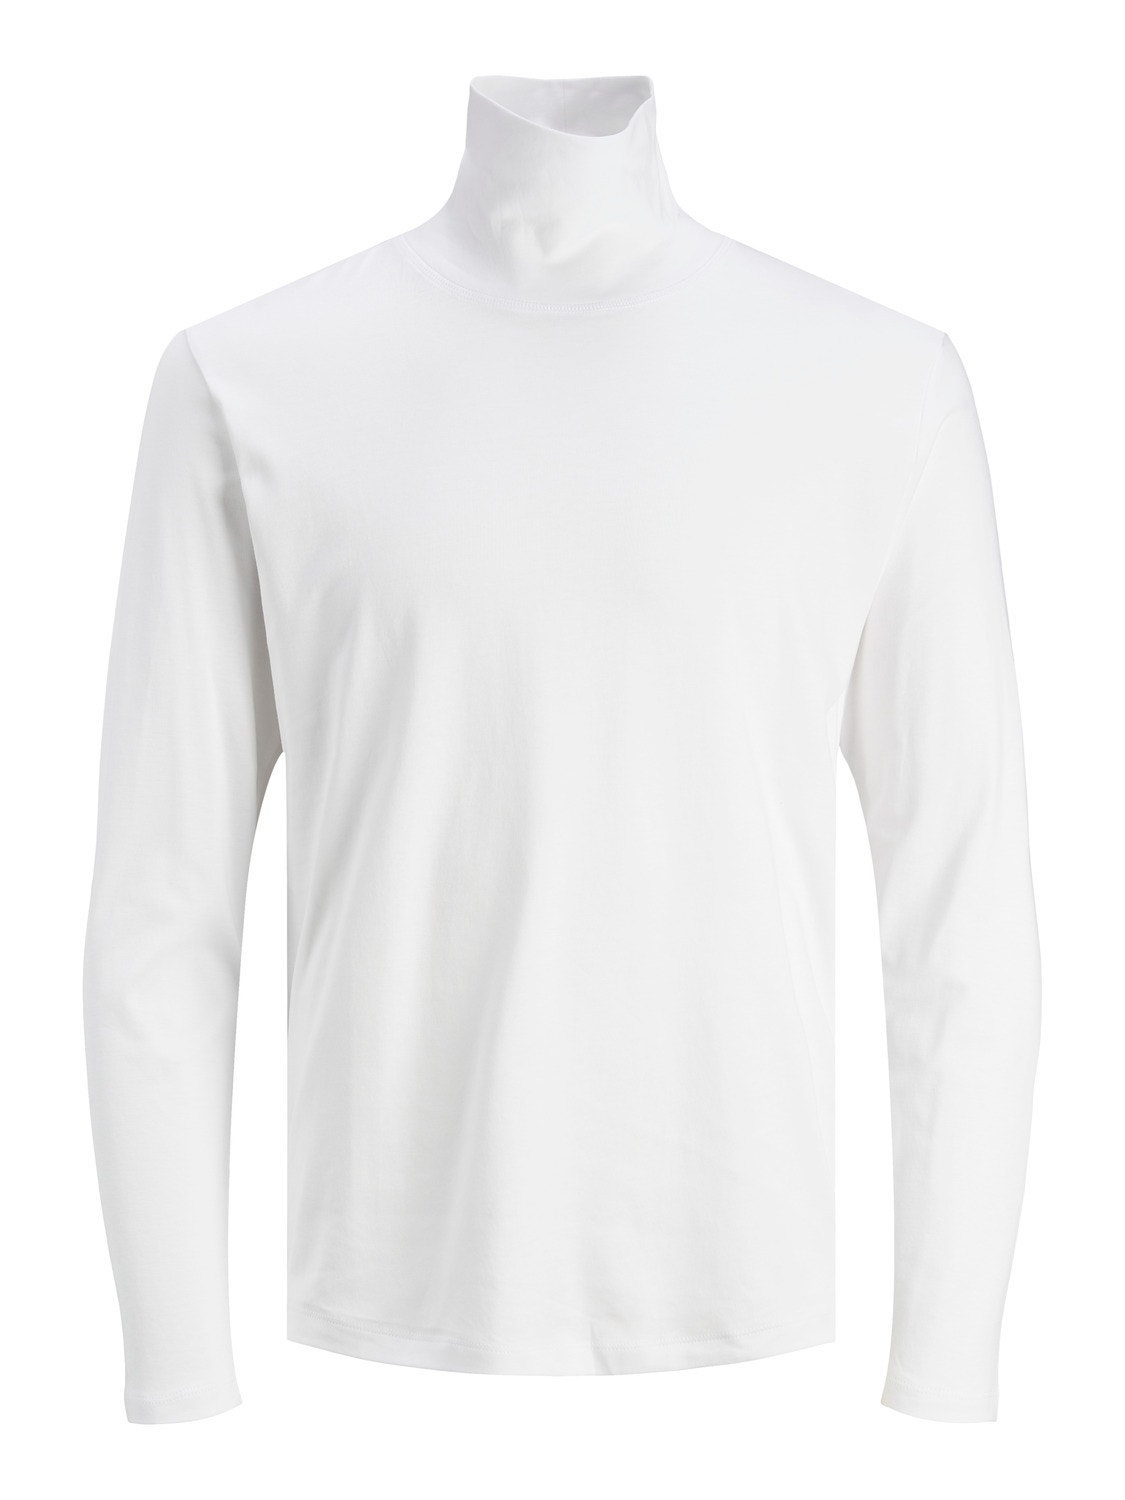 Jack & Jones Plain Roll Neck T-shirt -White - 12243471